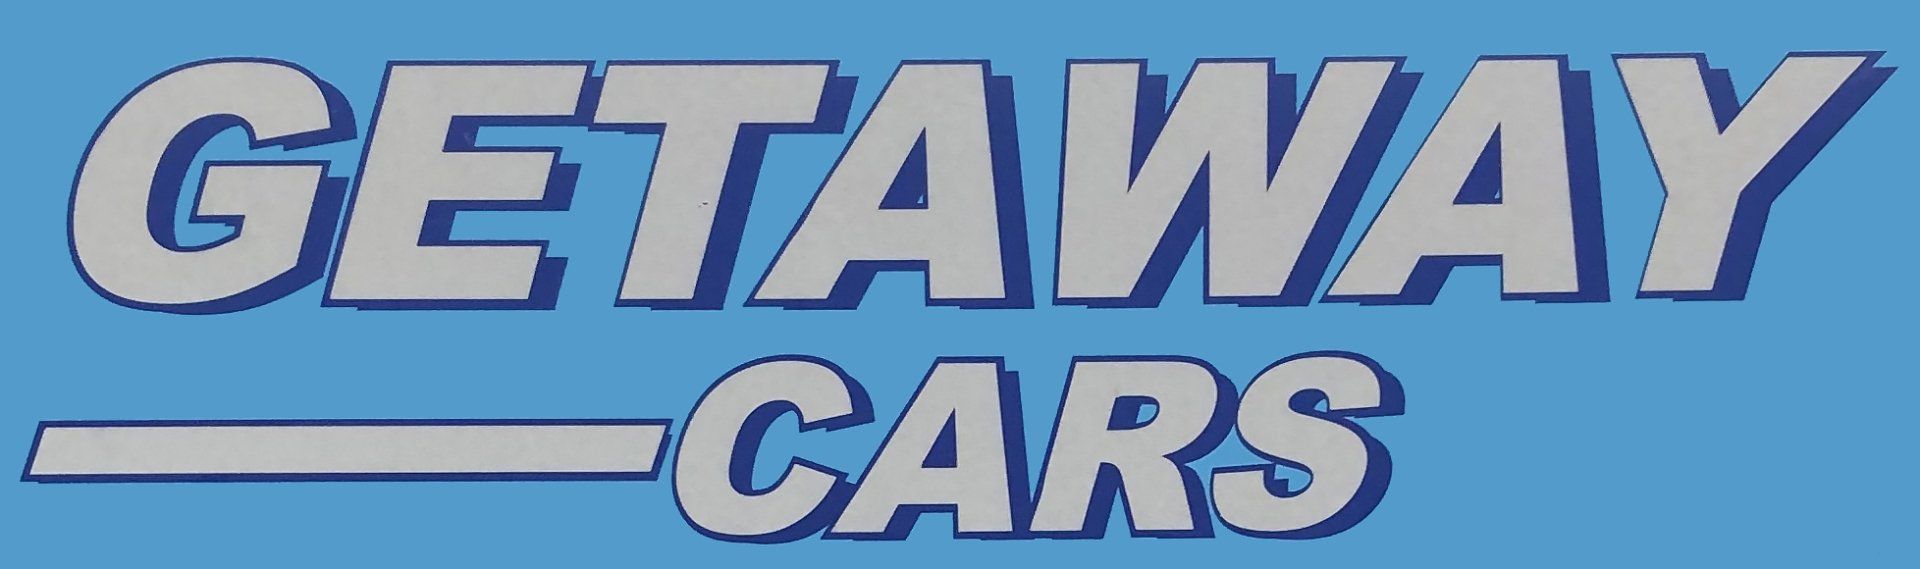 Getaway Cars logo